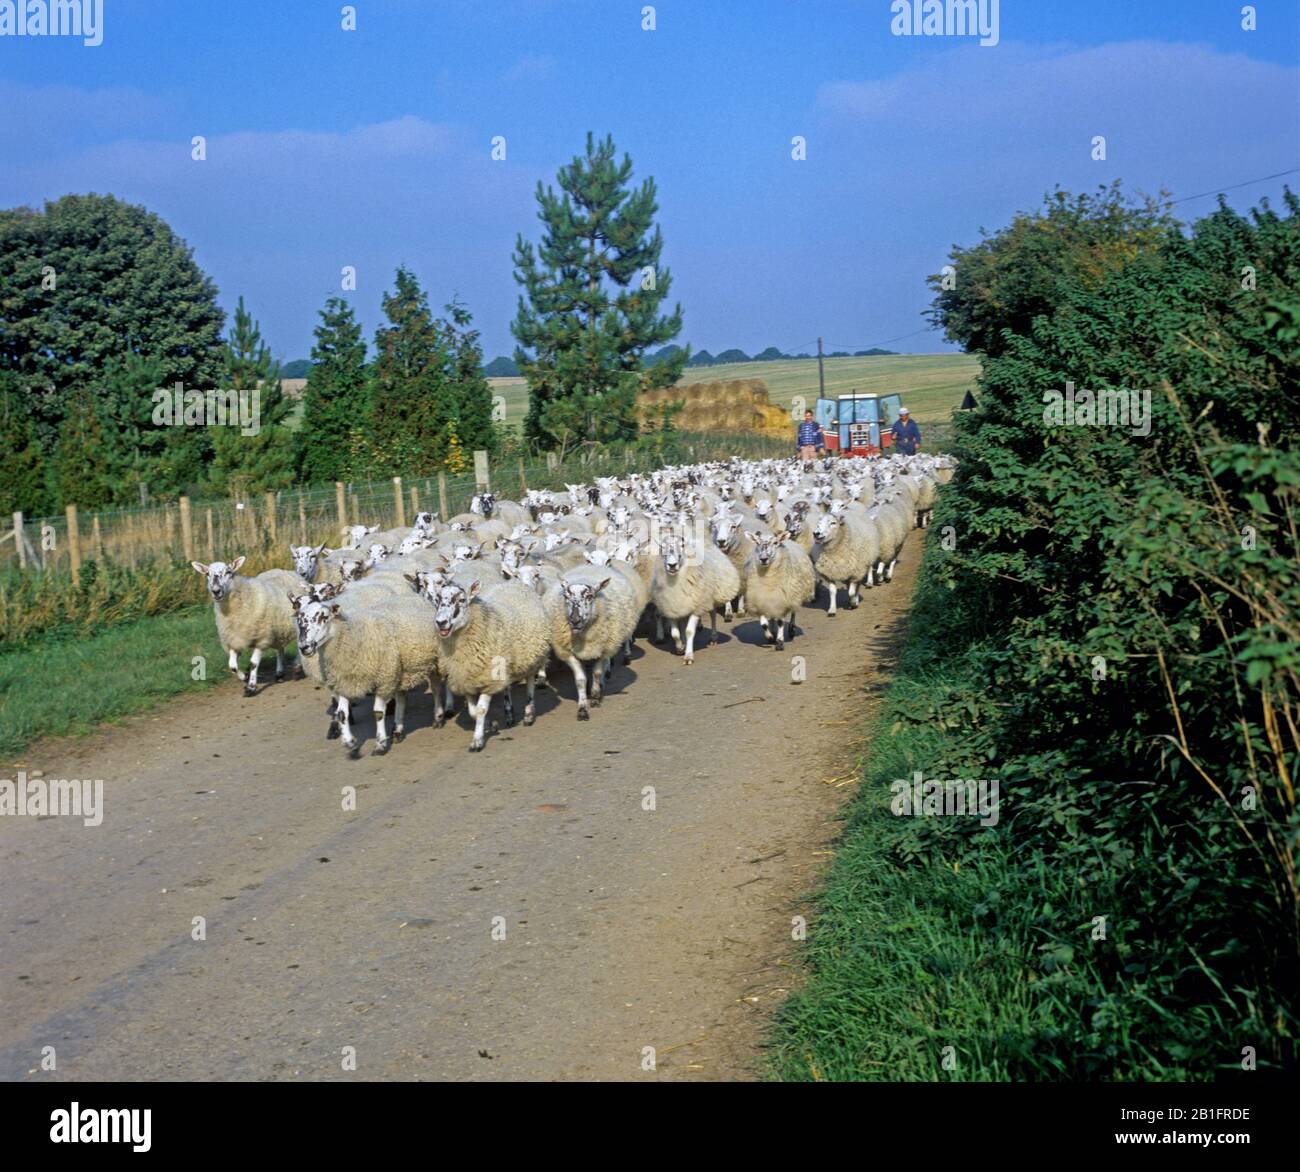 Al norte de Inglaterra, las ovejas de mula son conducidas a lo largo de una pequeña carretera rural en Berkshire, seguidas por pastores y un tractor Foto de stock